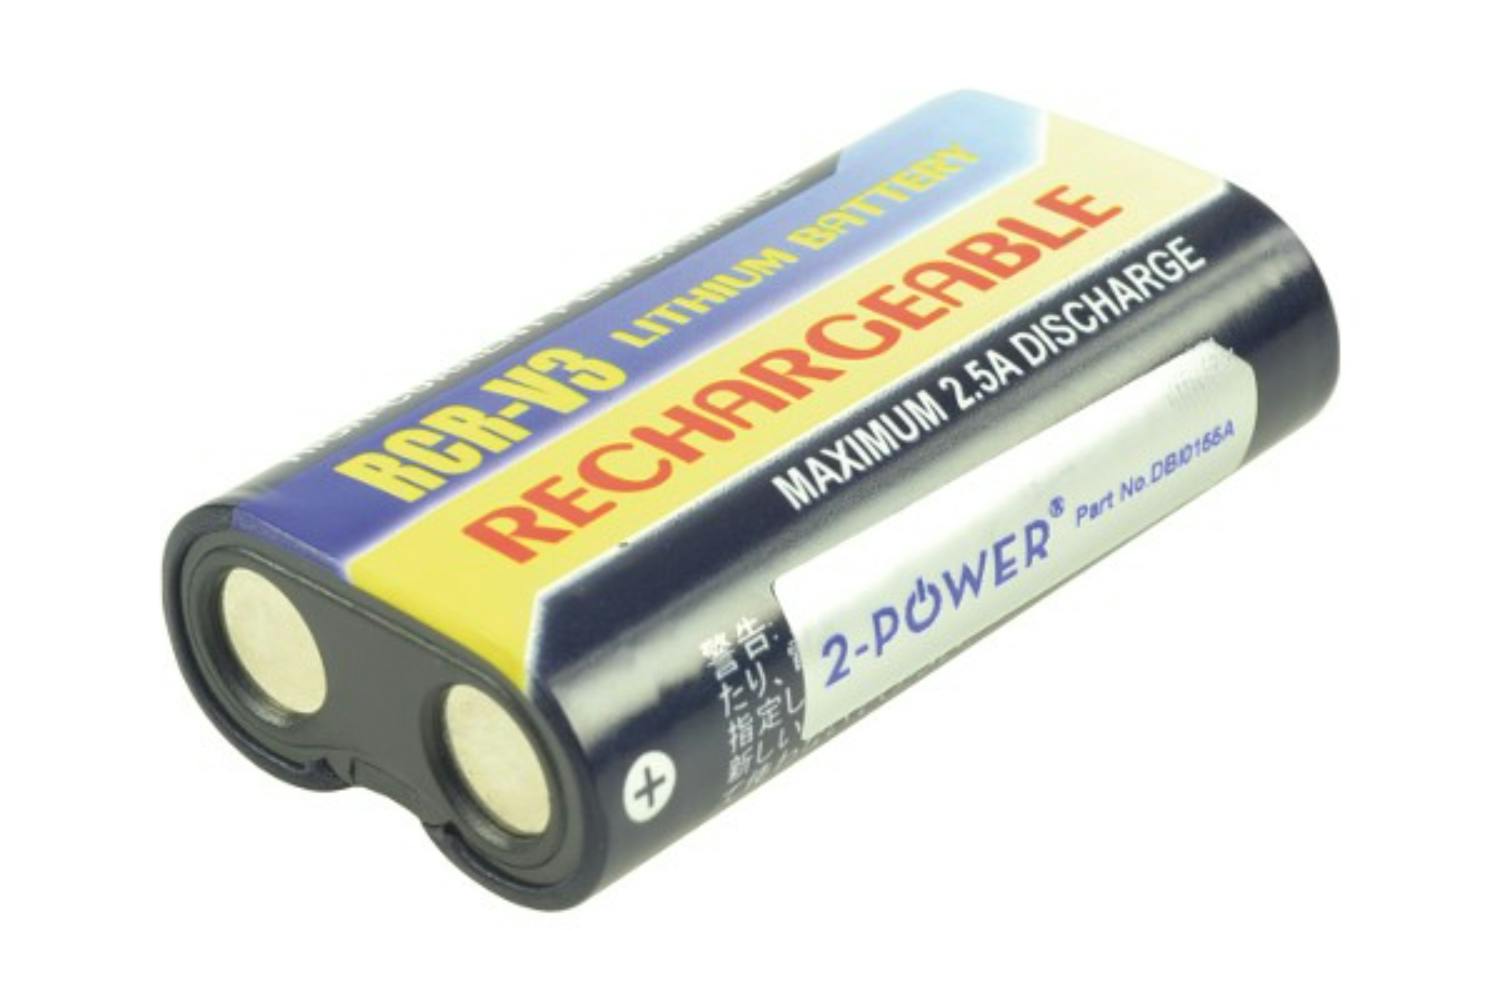 2-Power Digital Camera Battery 3V 1100mAh